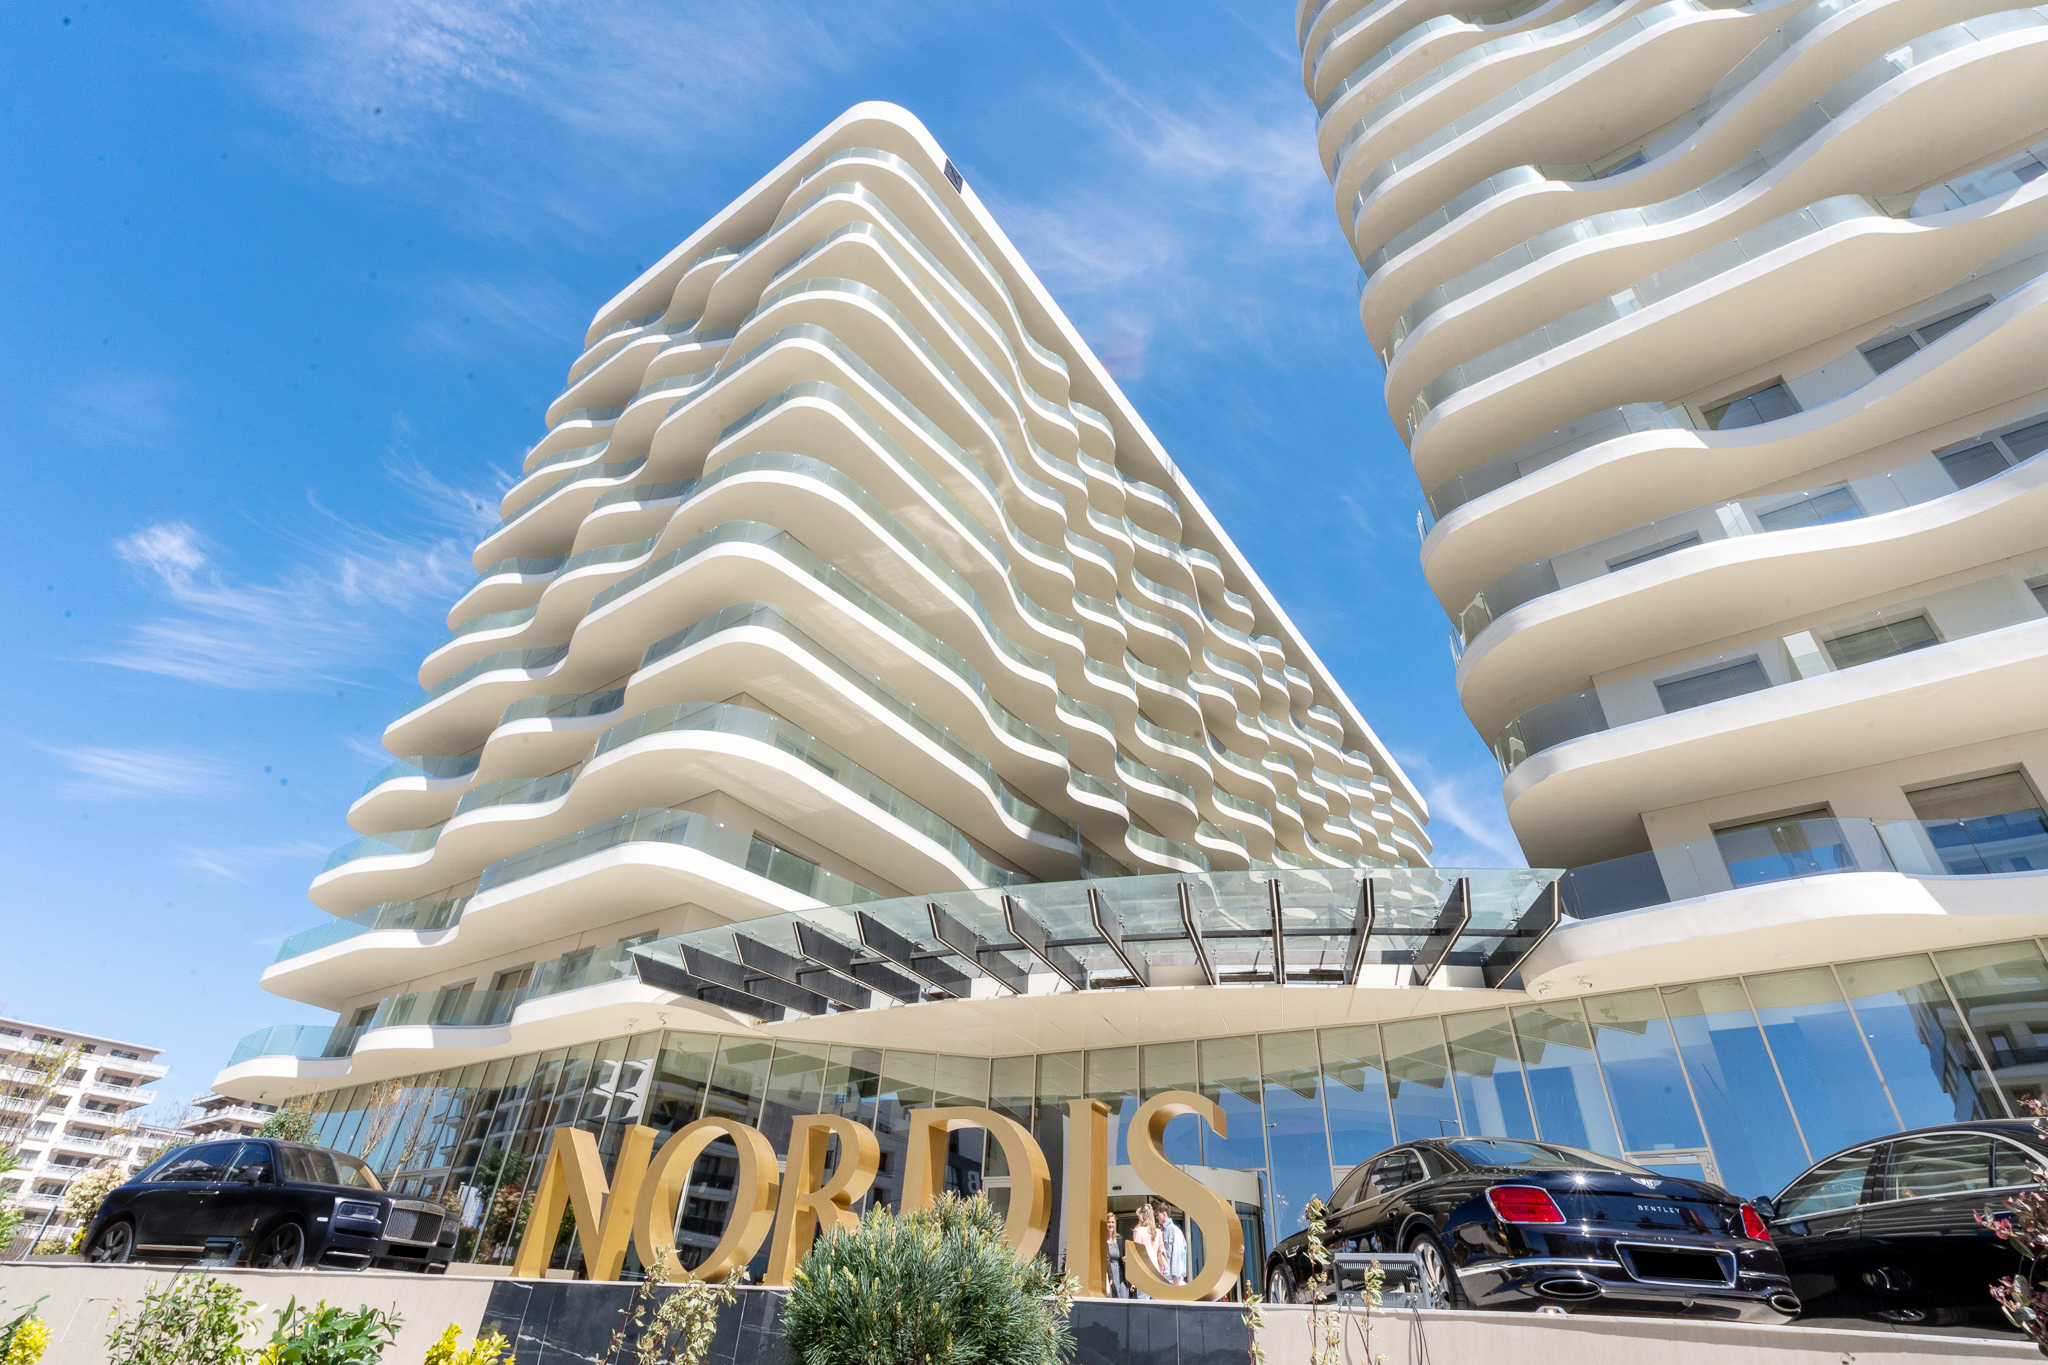 Hotelul Nordis Mamaia anunță începerea rezervărilor de servicii turistice pe platforma nordishotel.ro